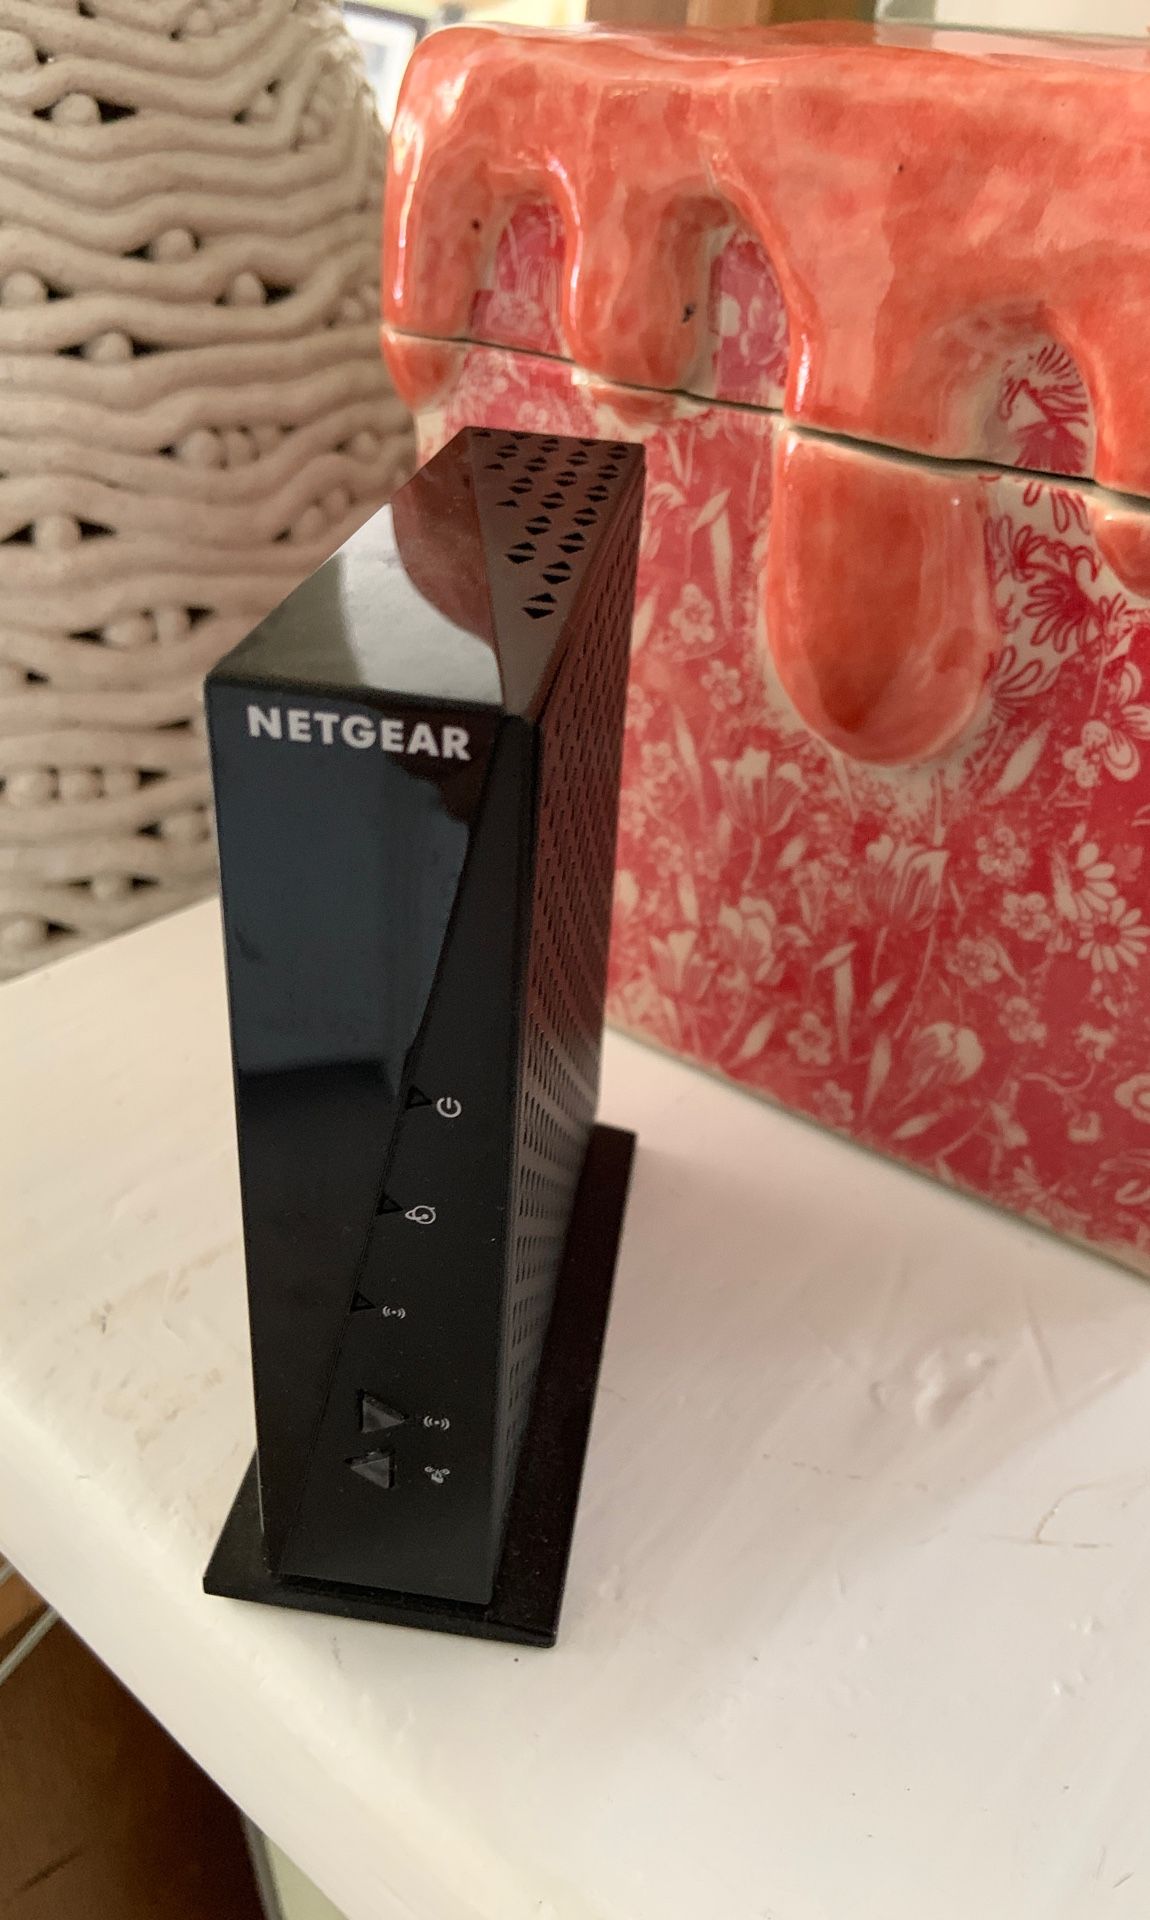 Netgear N300 wifi router